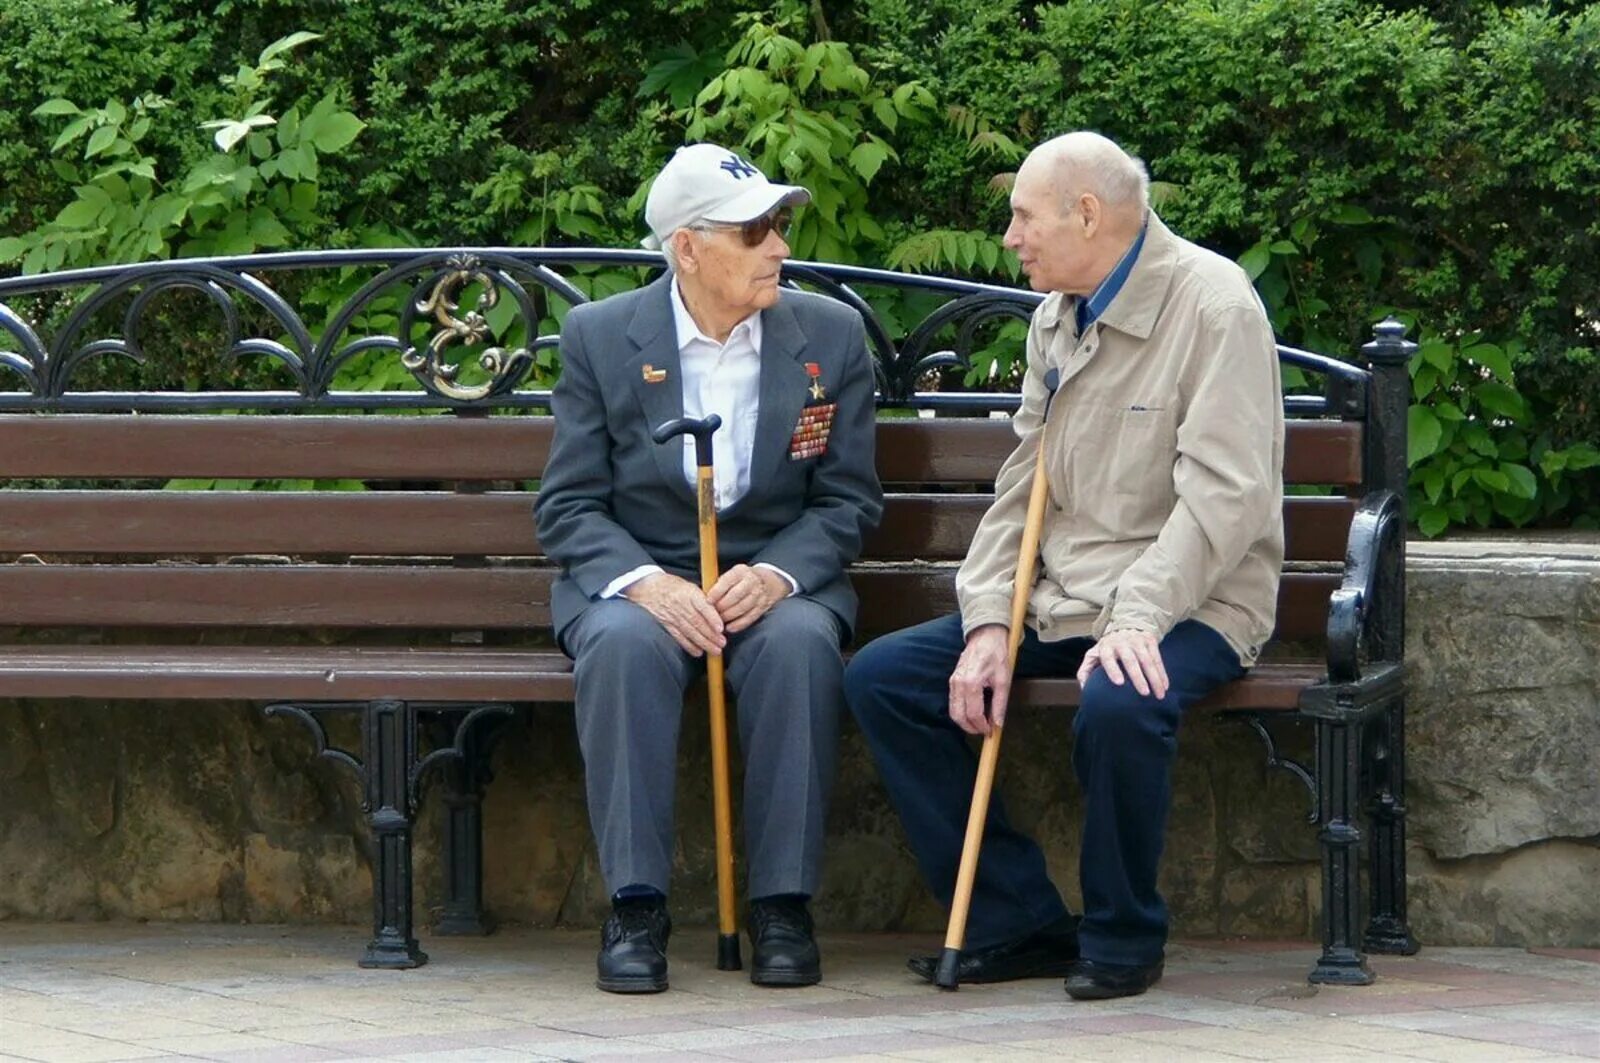 Старики спорят. Пенсионеры на лавочке. Дед на скамейке. Старик на скамейке. Два старика на лавочке.